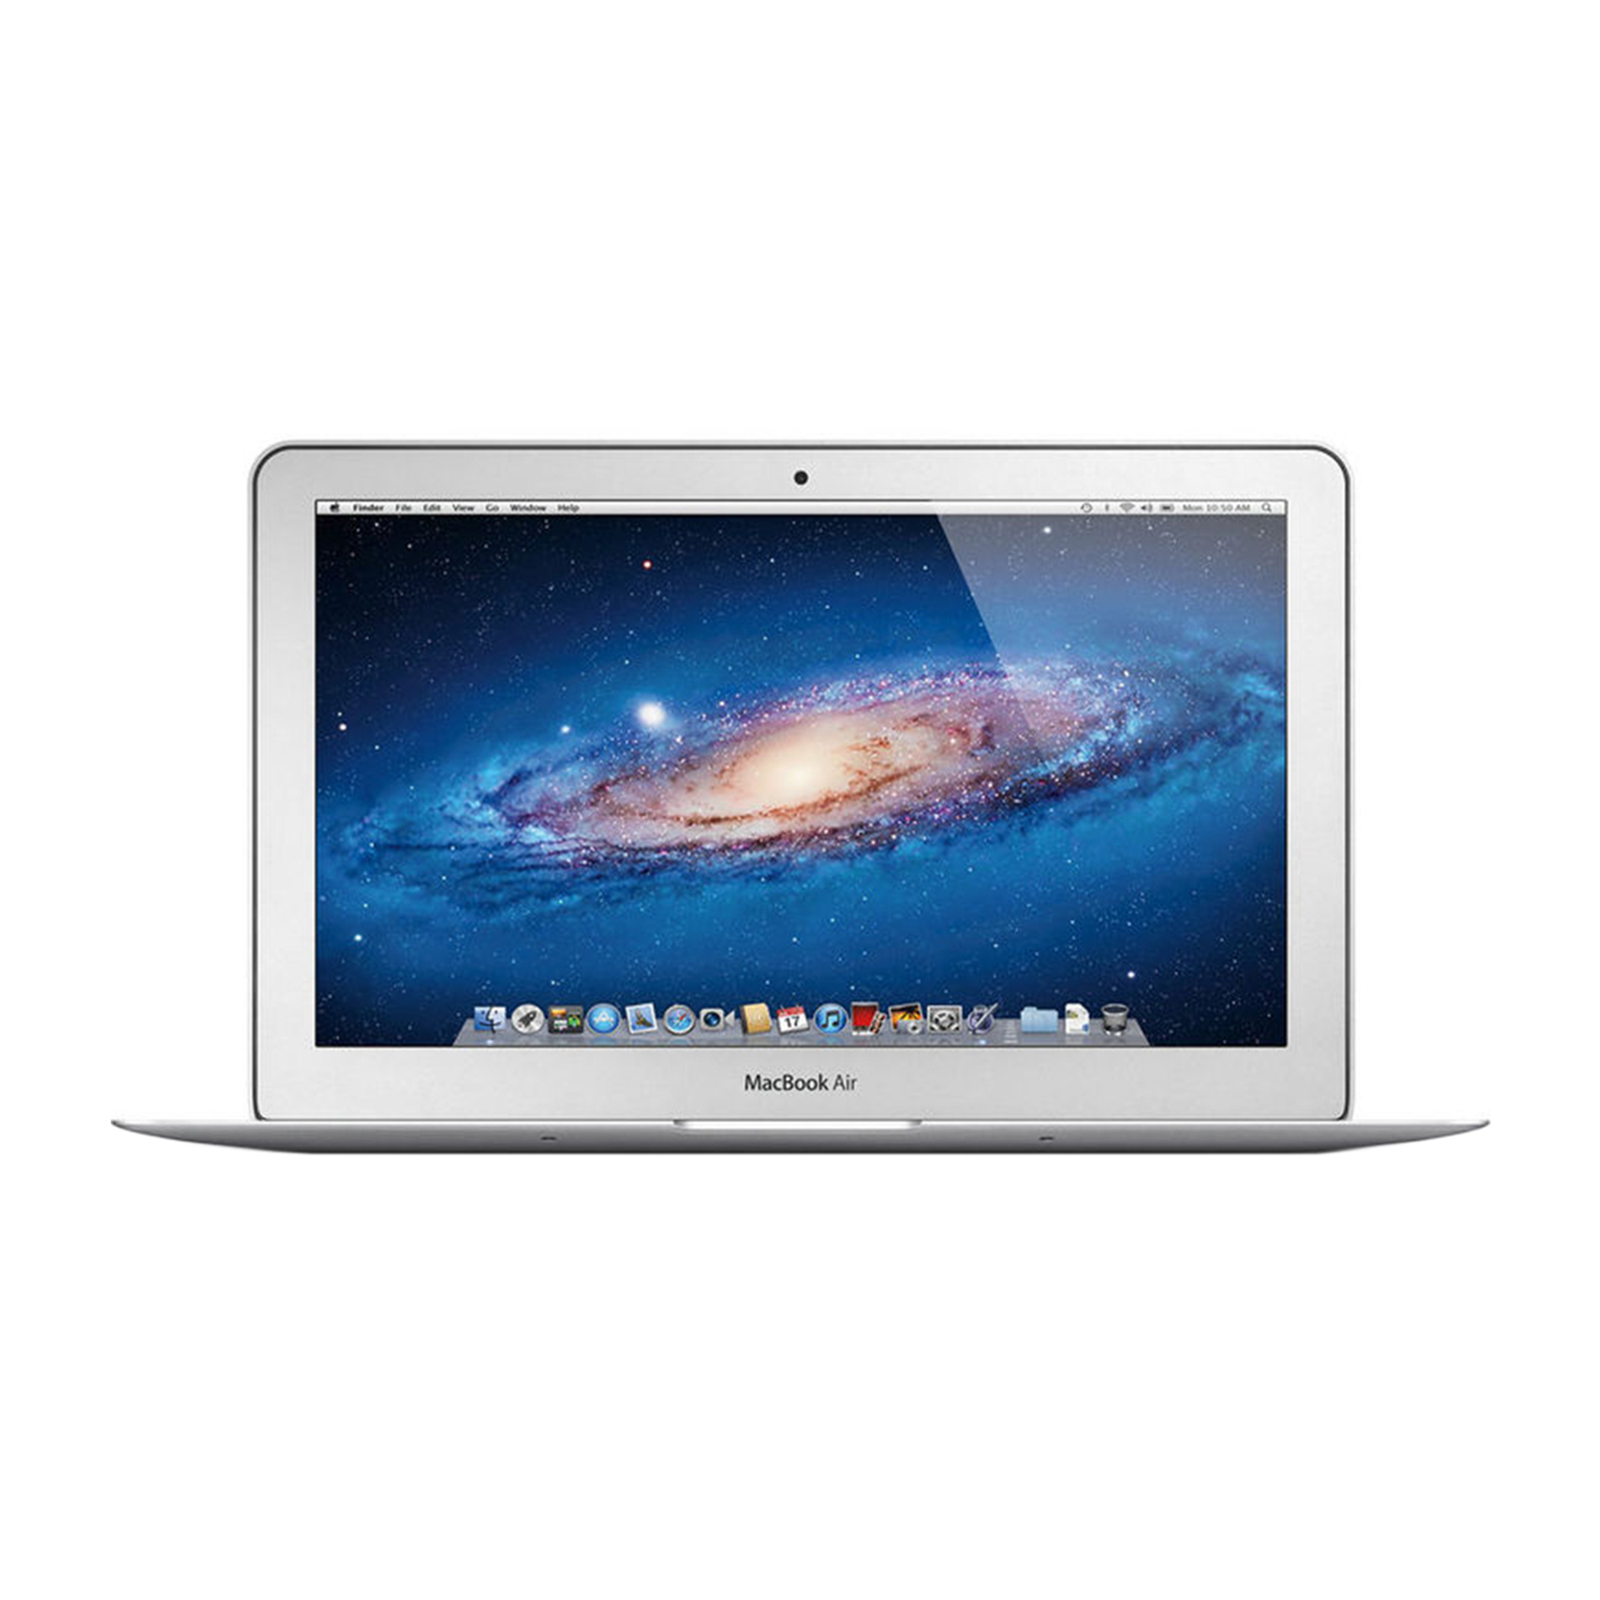 Macbook Air 13" Mid 2011 - Core i5 1.7Ghz / 4GB RAM / 128GB SSD